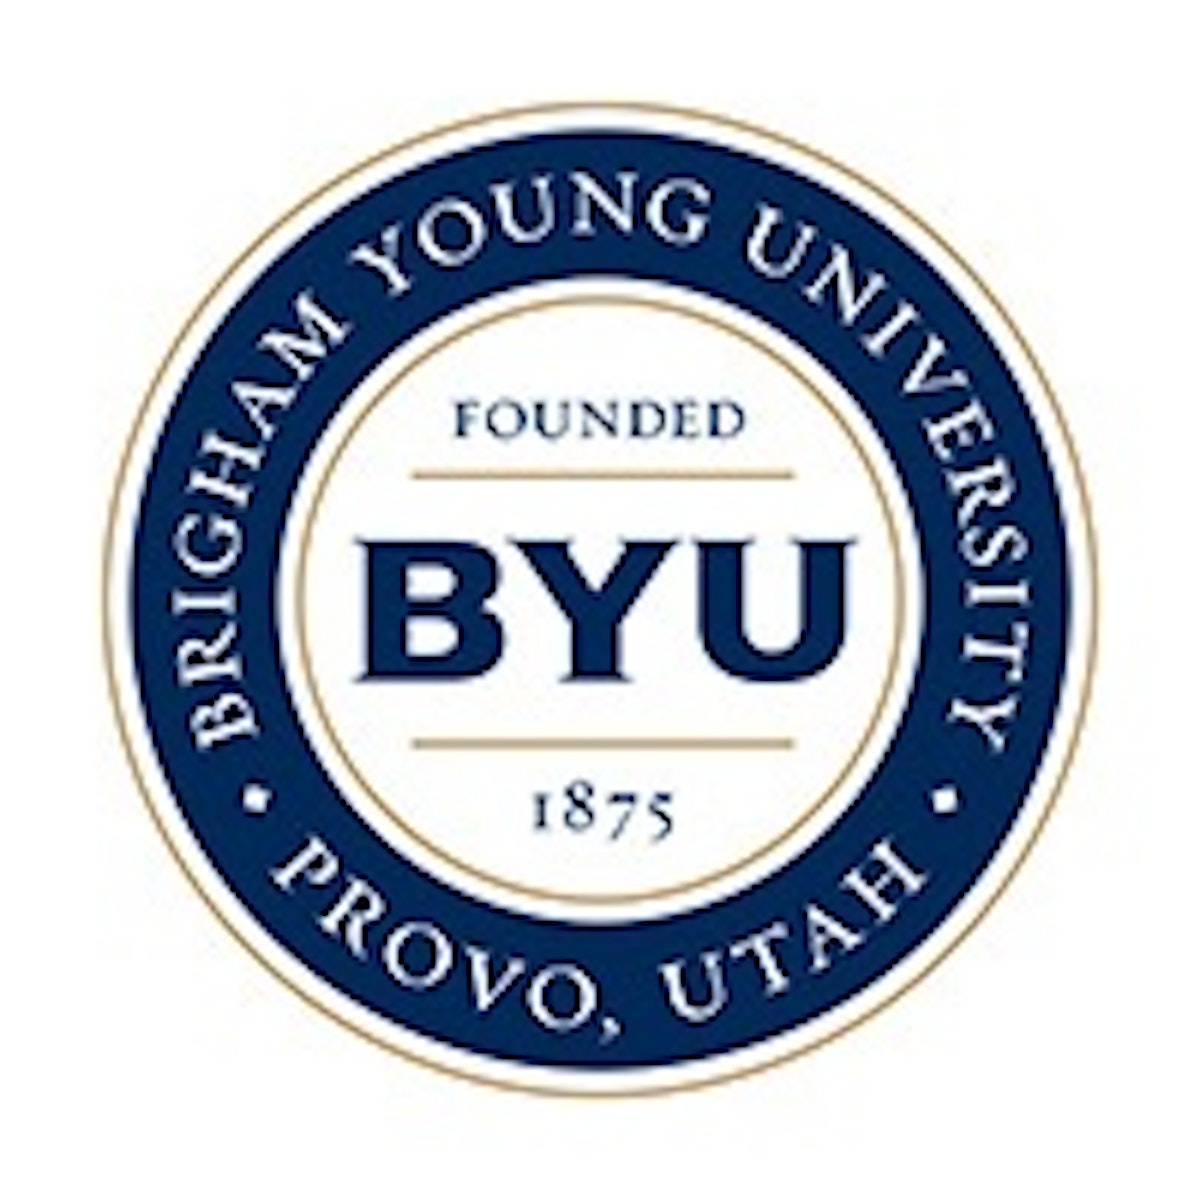 Harold B. Lee Library at Brigham Young University logo